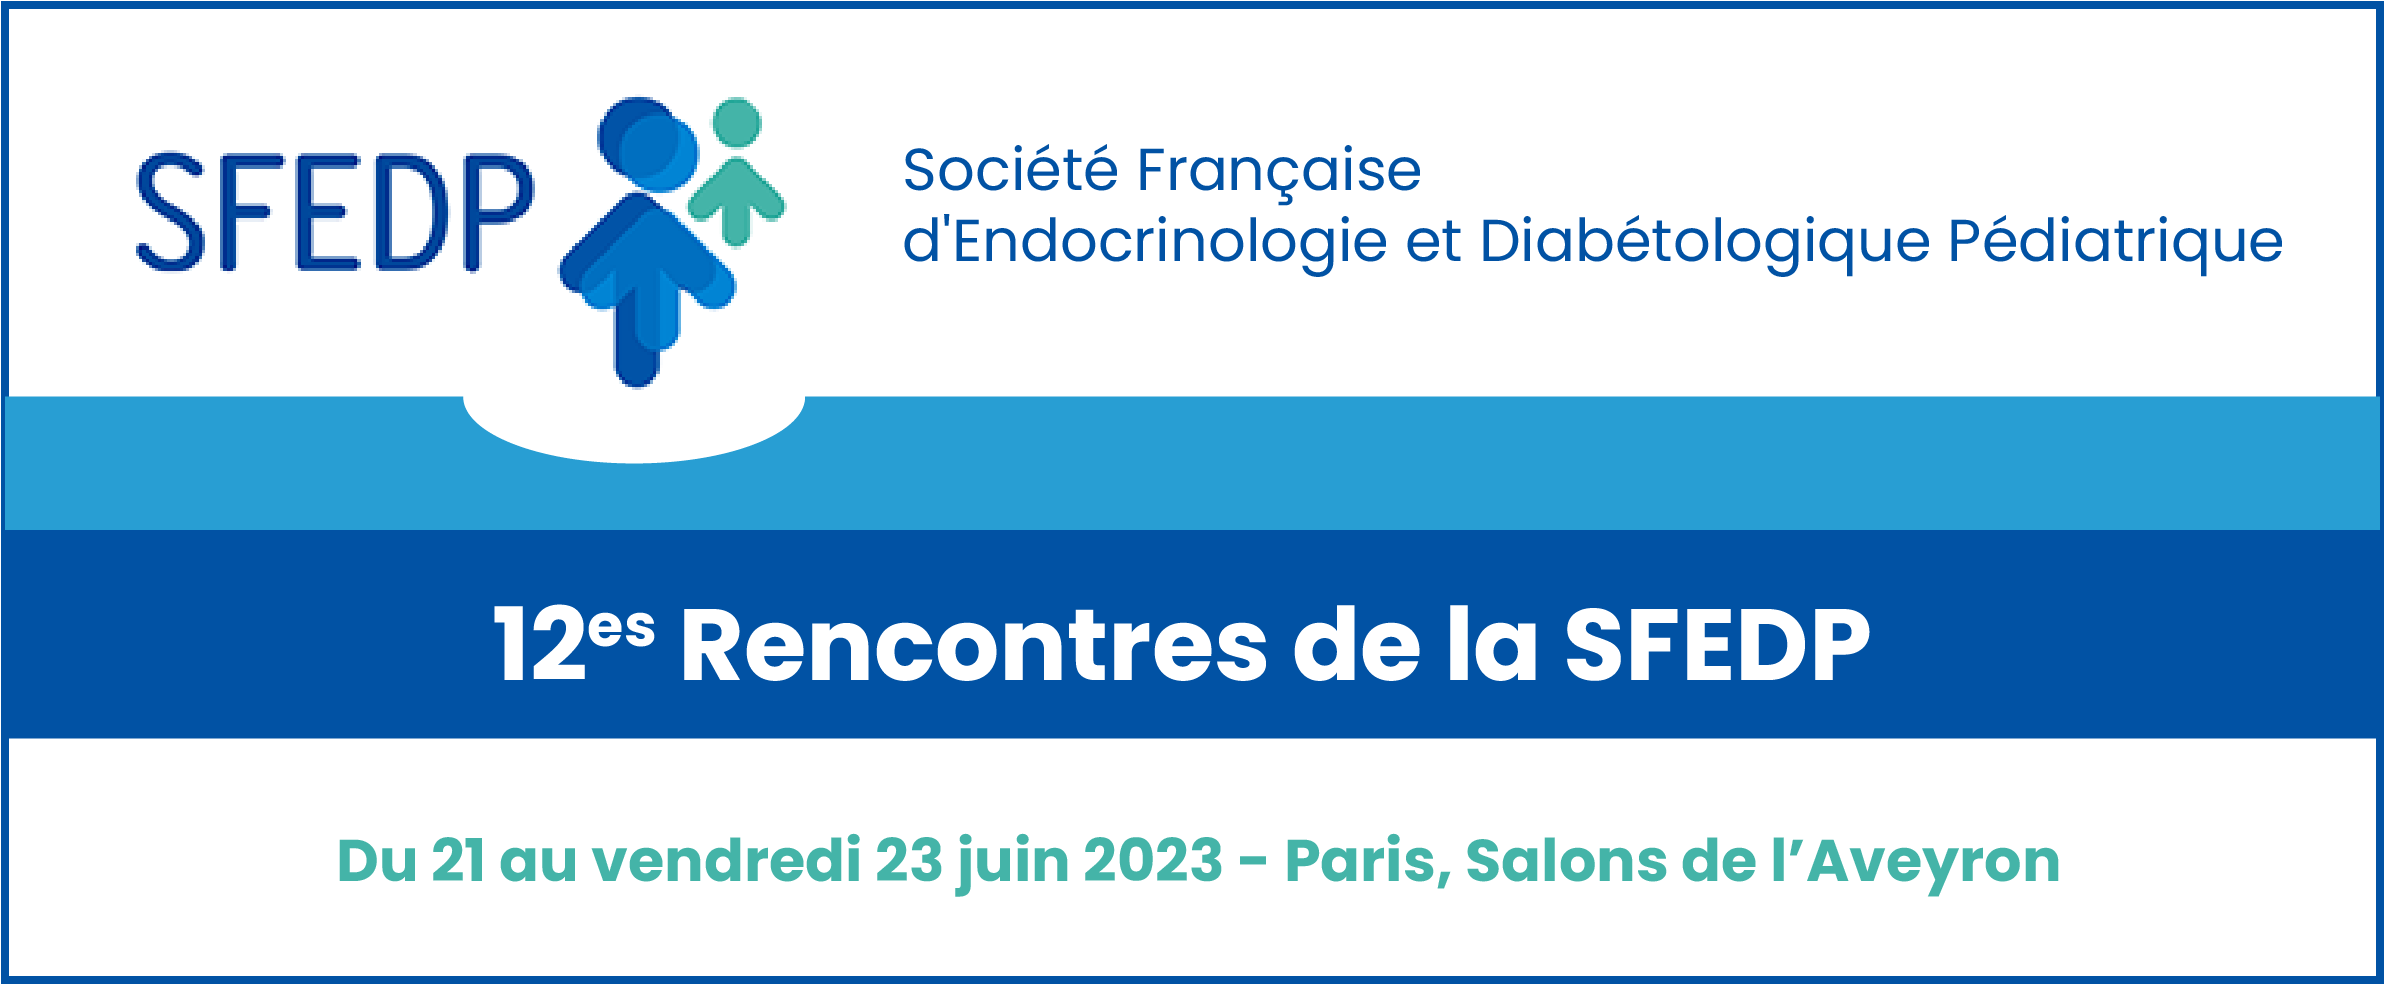 12es Rencontres de la Société Française d'Endocrinologie et Diabétologique Pédiatrique - SFEDP 2023